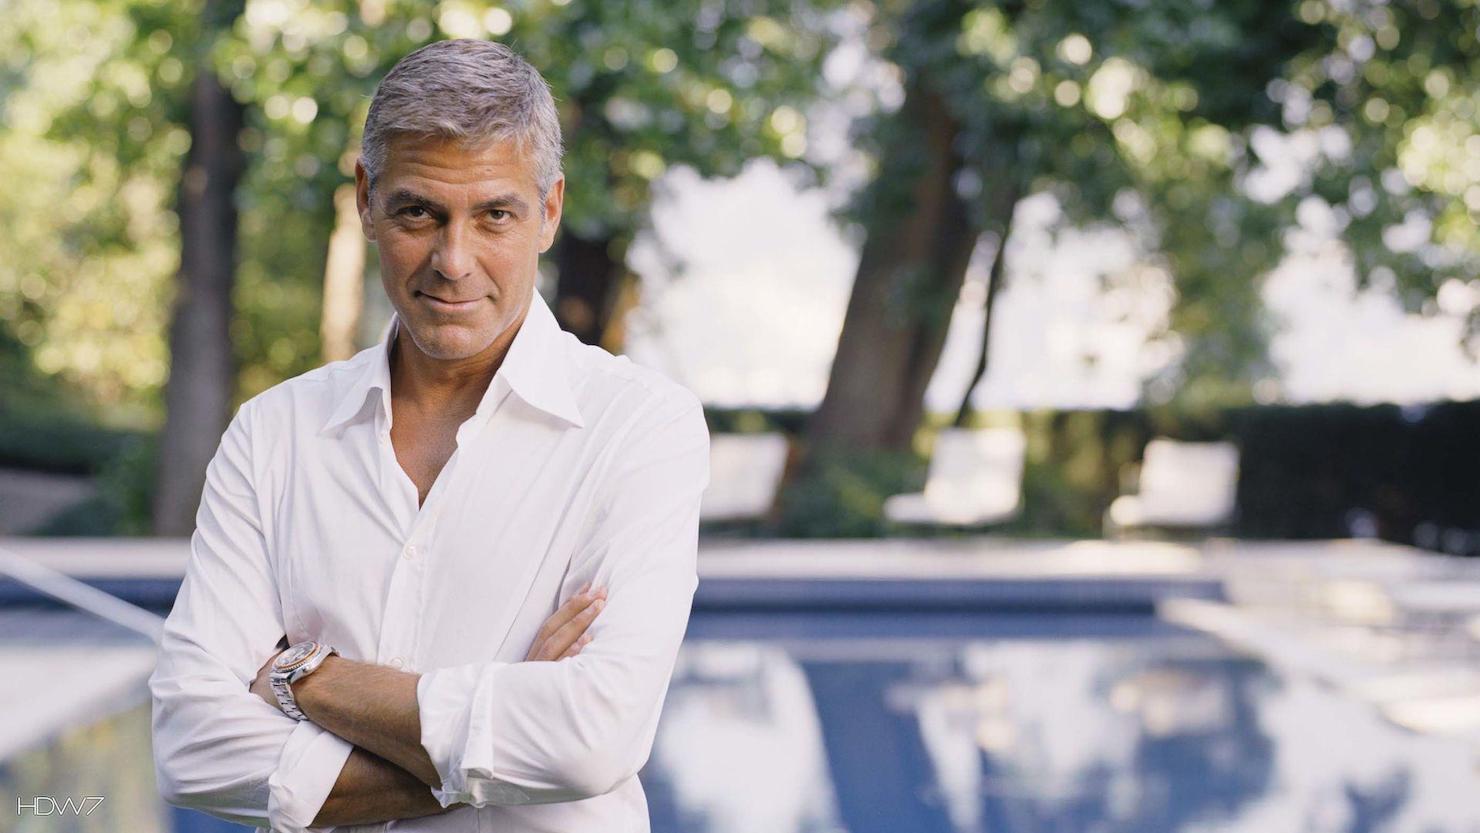 Очарование Джорджа Клуни: фото его роста и стройной фигуры